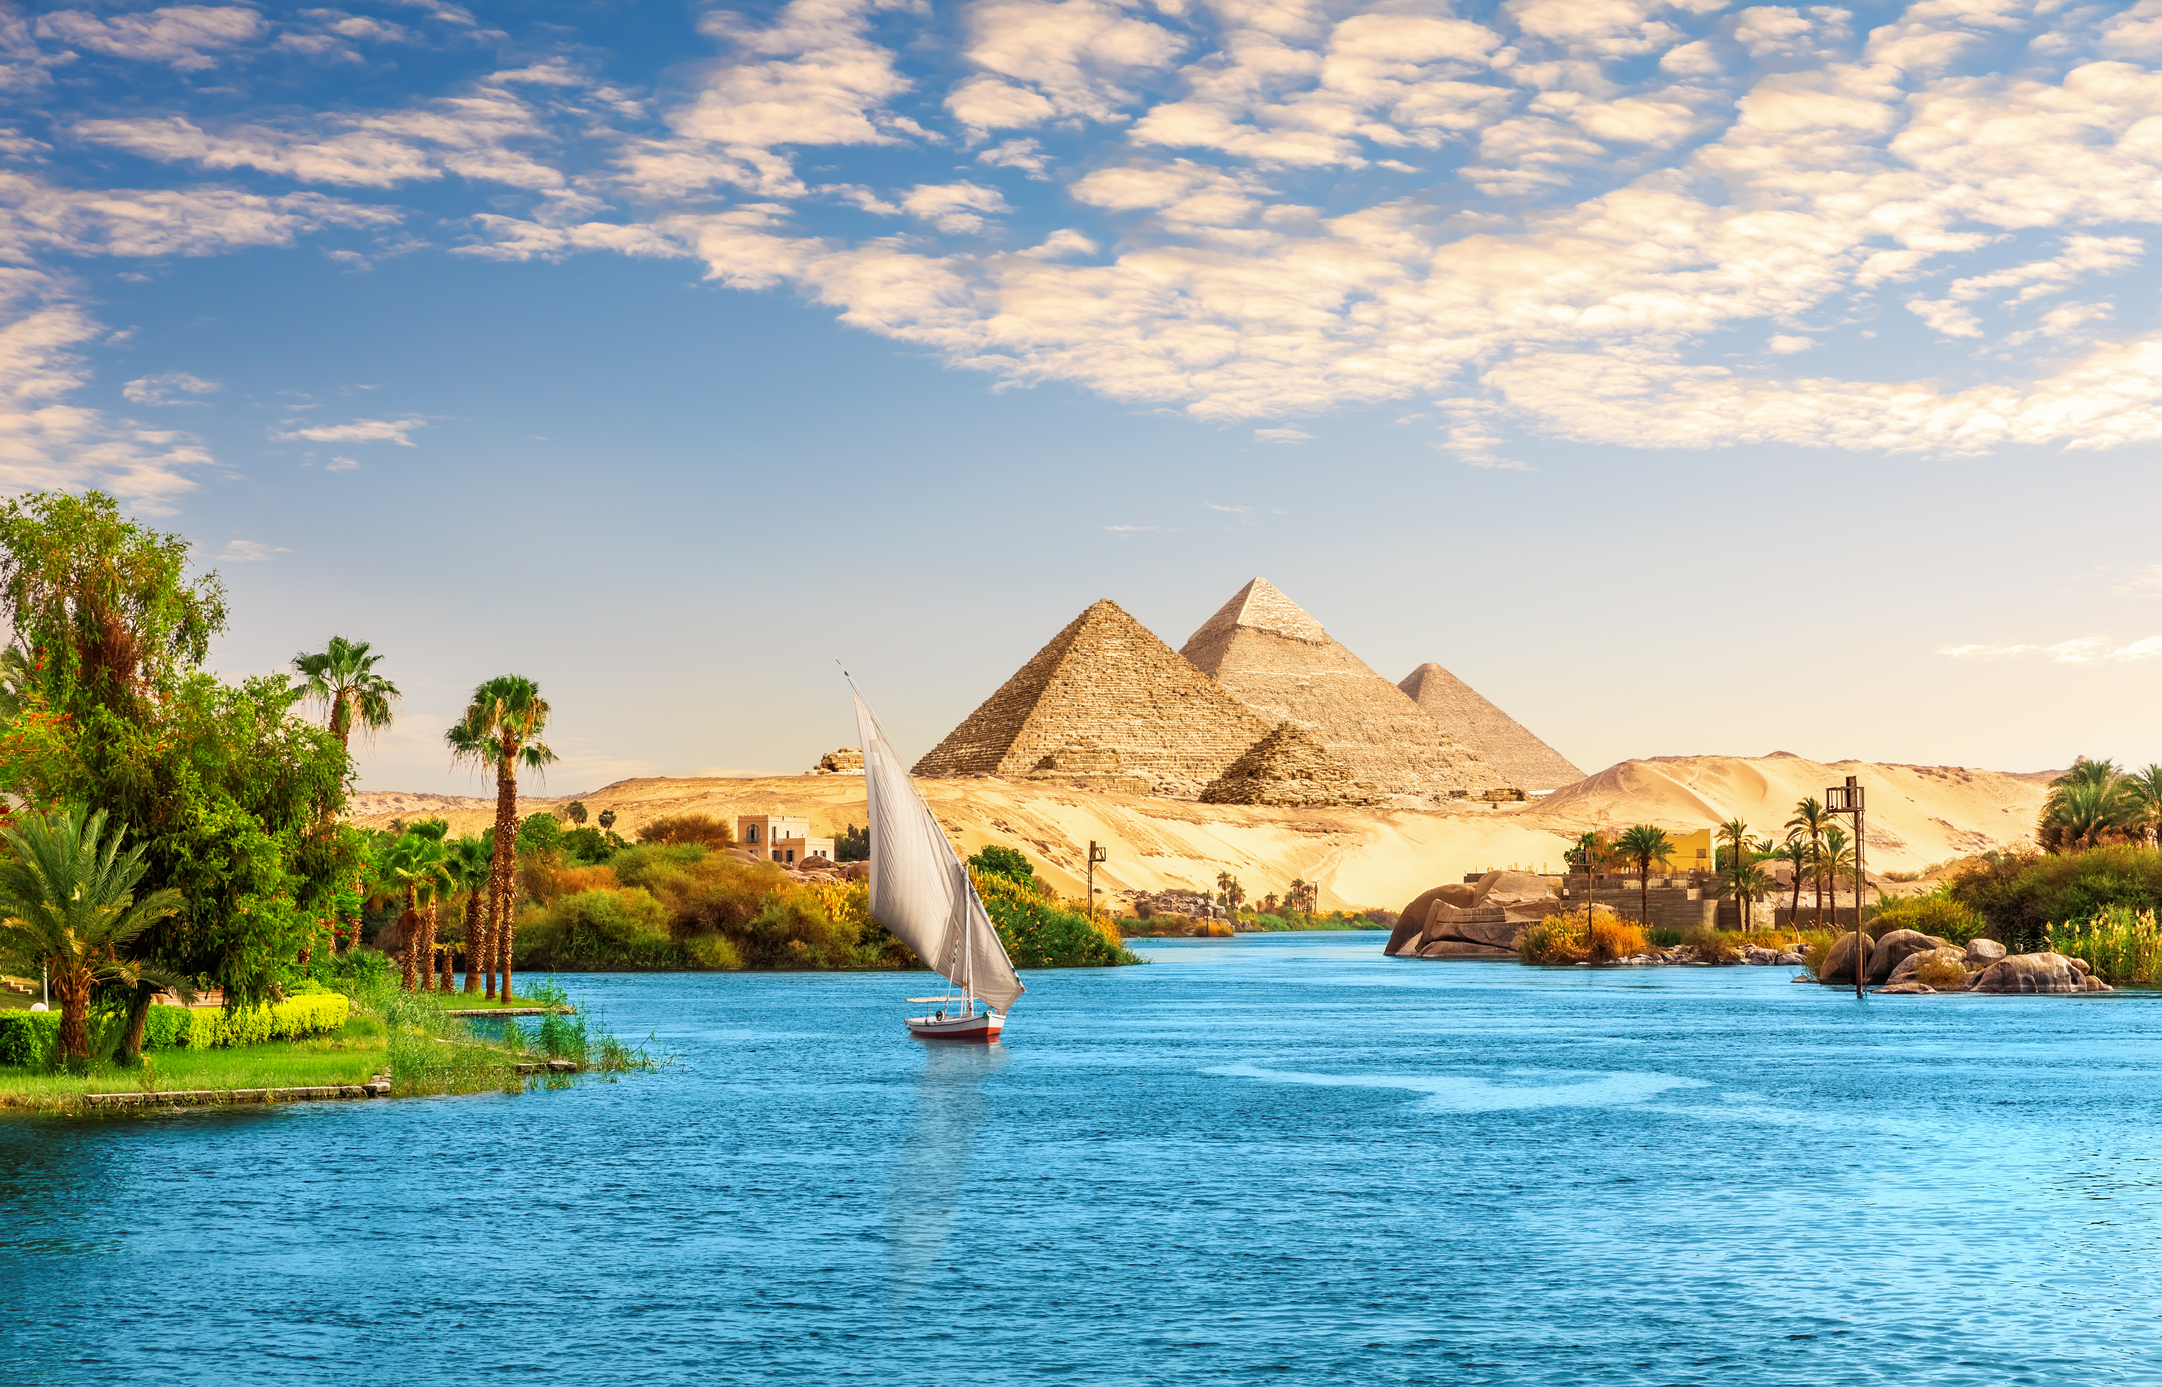 Vakantie Egypte met kinderen veilig